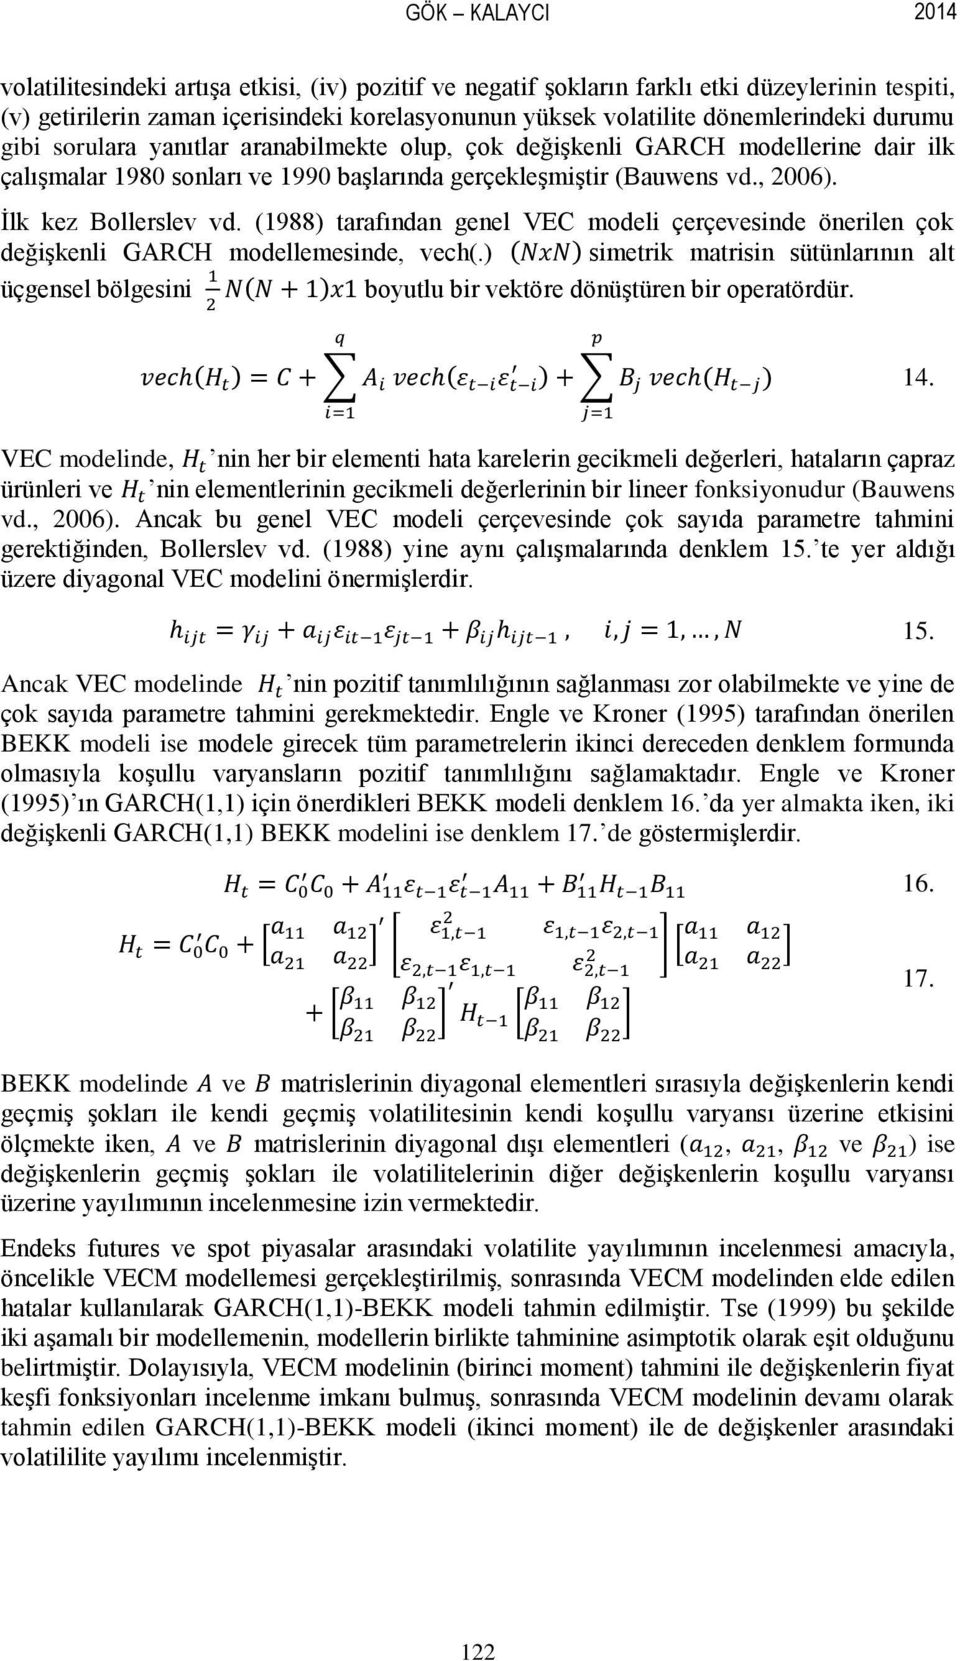 (1988) tarafından genel VEC modeli çerçevesinde önerilen çok değişkenli GARCH modellemesinde, vech(.